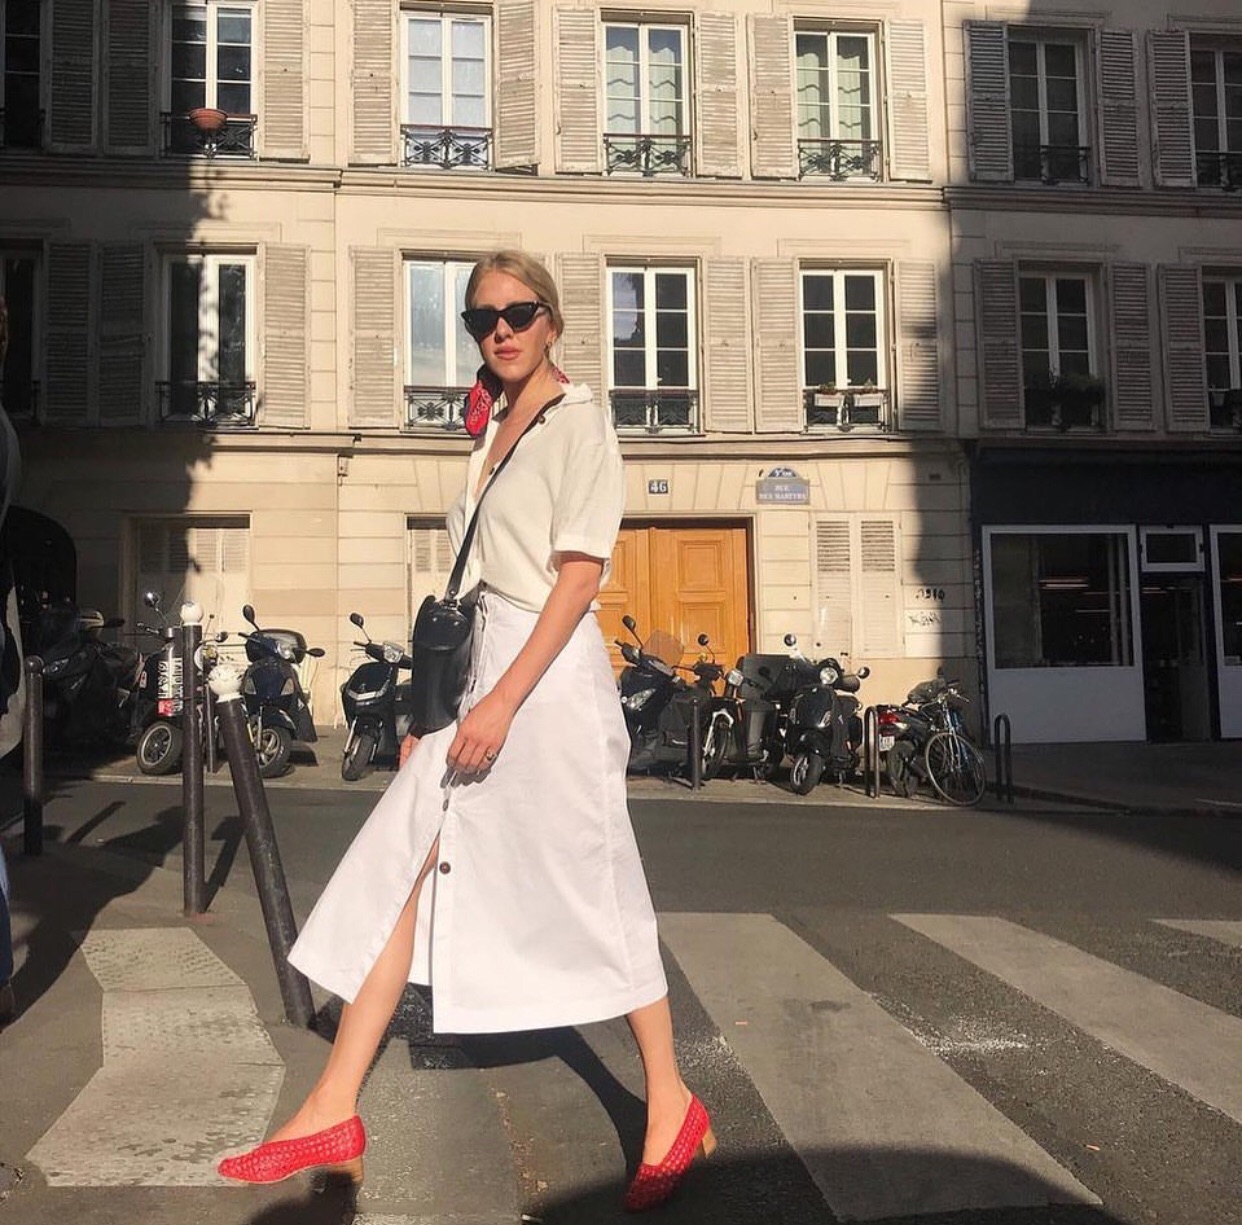 Đừng mãi quanh quẩn với giày đen/trắng nữa, giày đỏ mới thực sự giúp nâng tầm style và khiến bạn trông sang như gái Pháp - Ảnh 10.